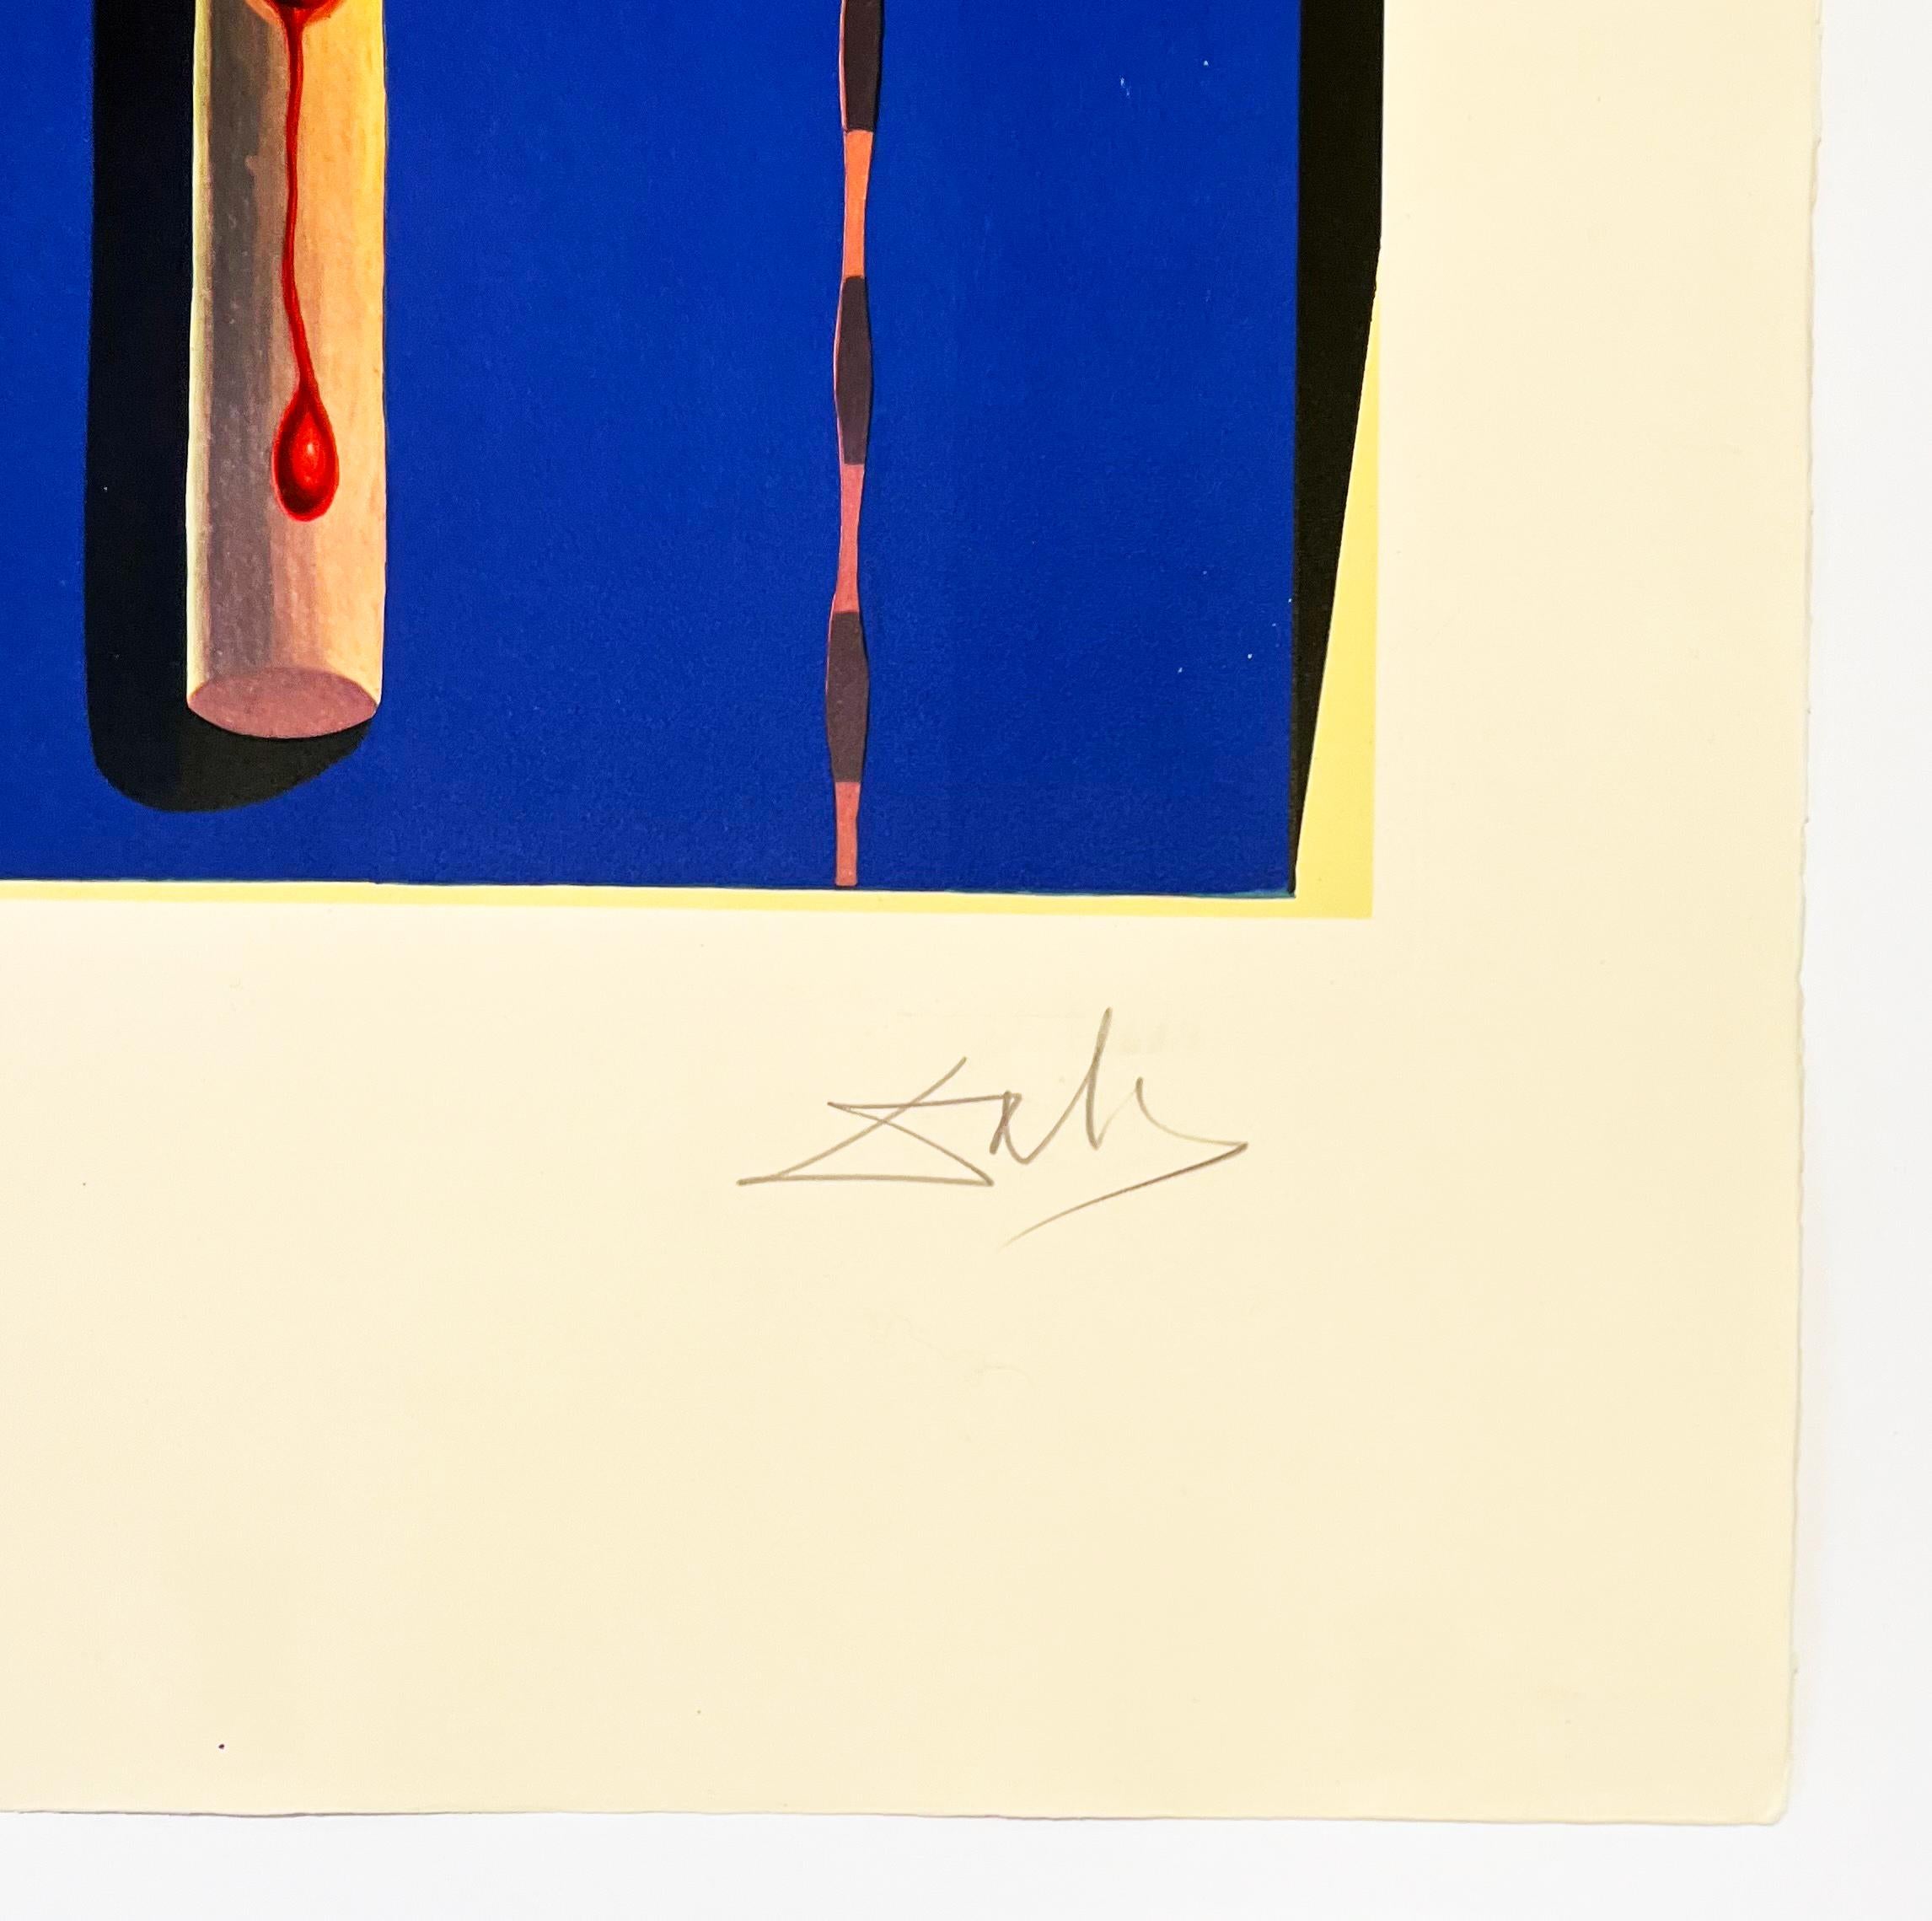 Artistics : Salvador Dali
Titre : Béquilles surréalistes
Portfolio : Mémoires du surréalisme
Supports : Gravure et photolithographie
Date : 1971
Édition : AP XIV/XXV (épreuve d'artiste 14/25, en dehors de l'édition de 175)
Taille du cadre : 35 1/2